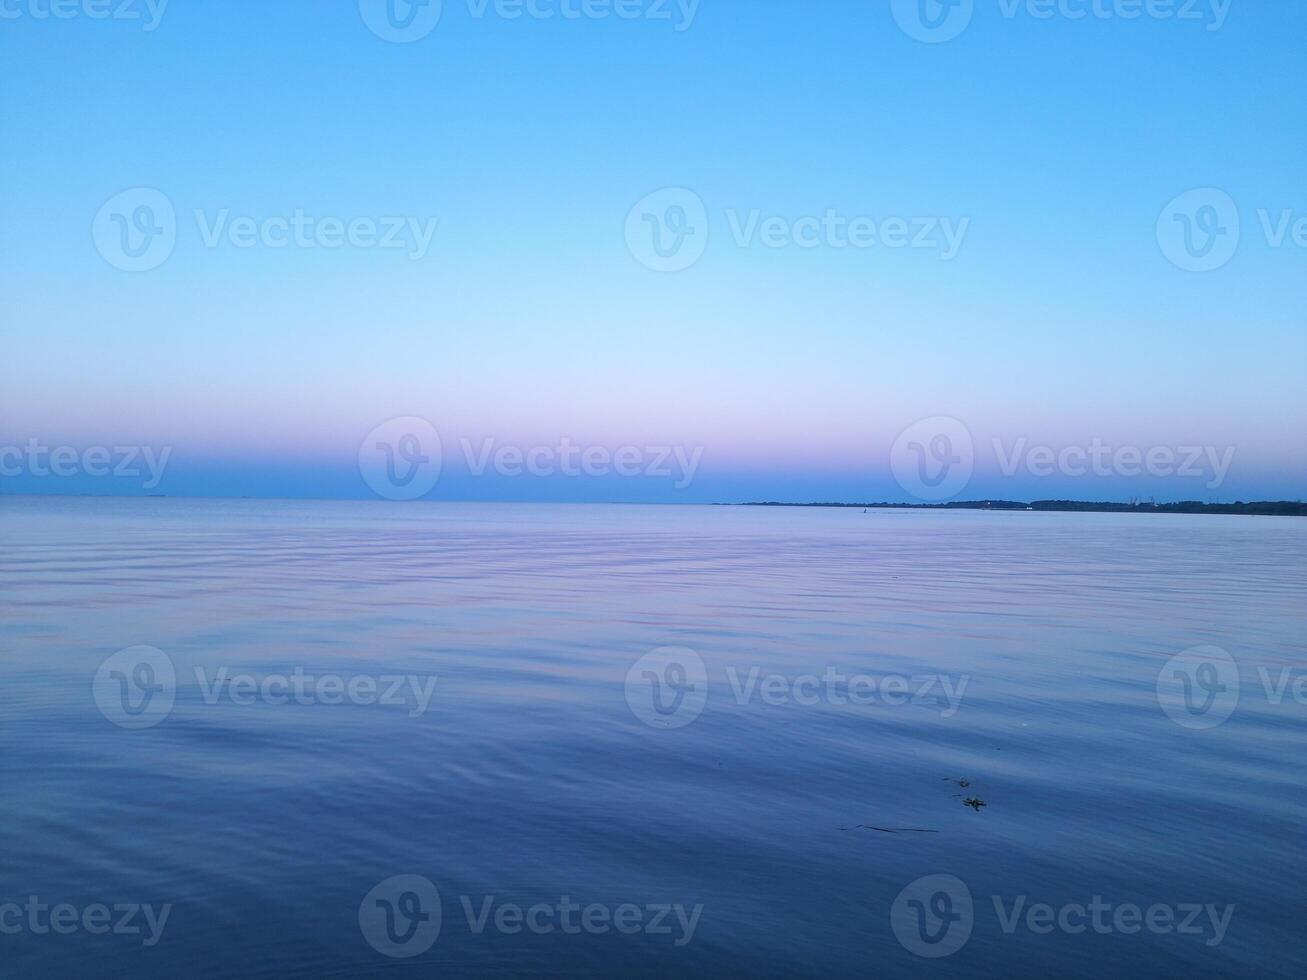 stil blauw zee en lucht foto